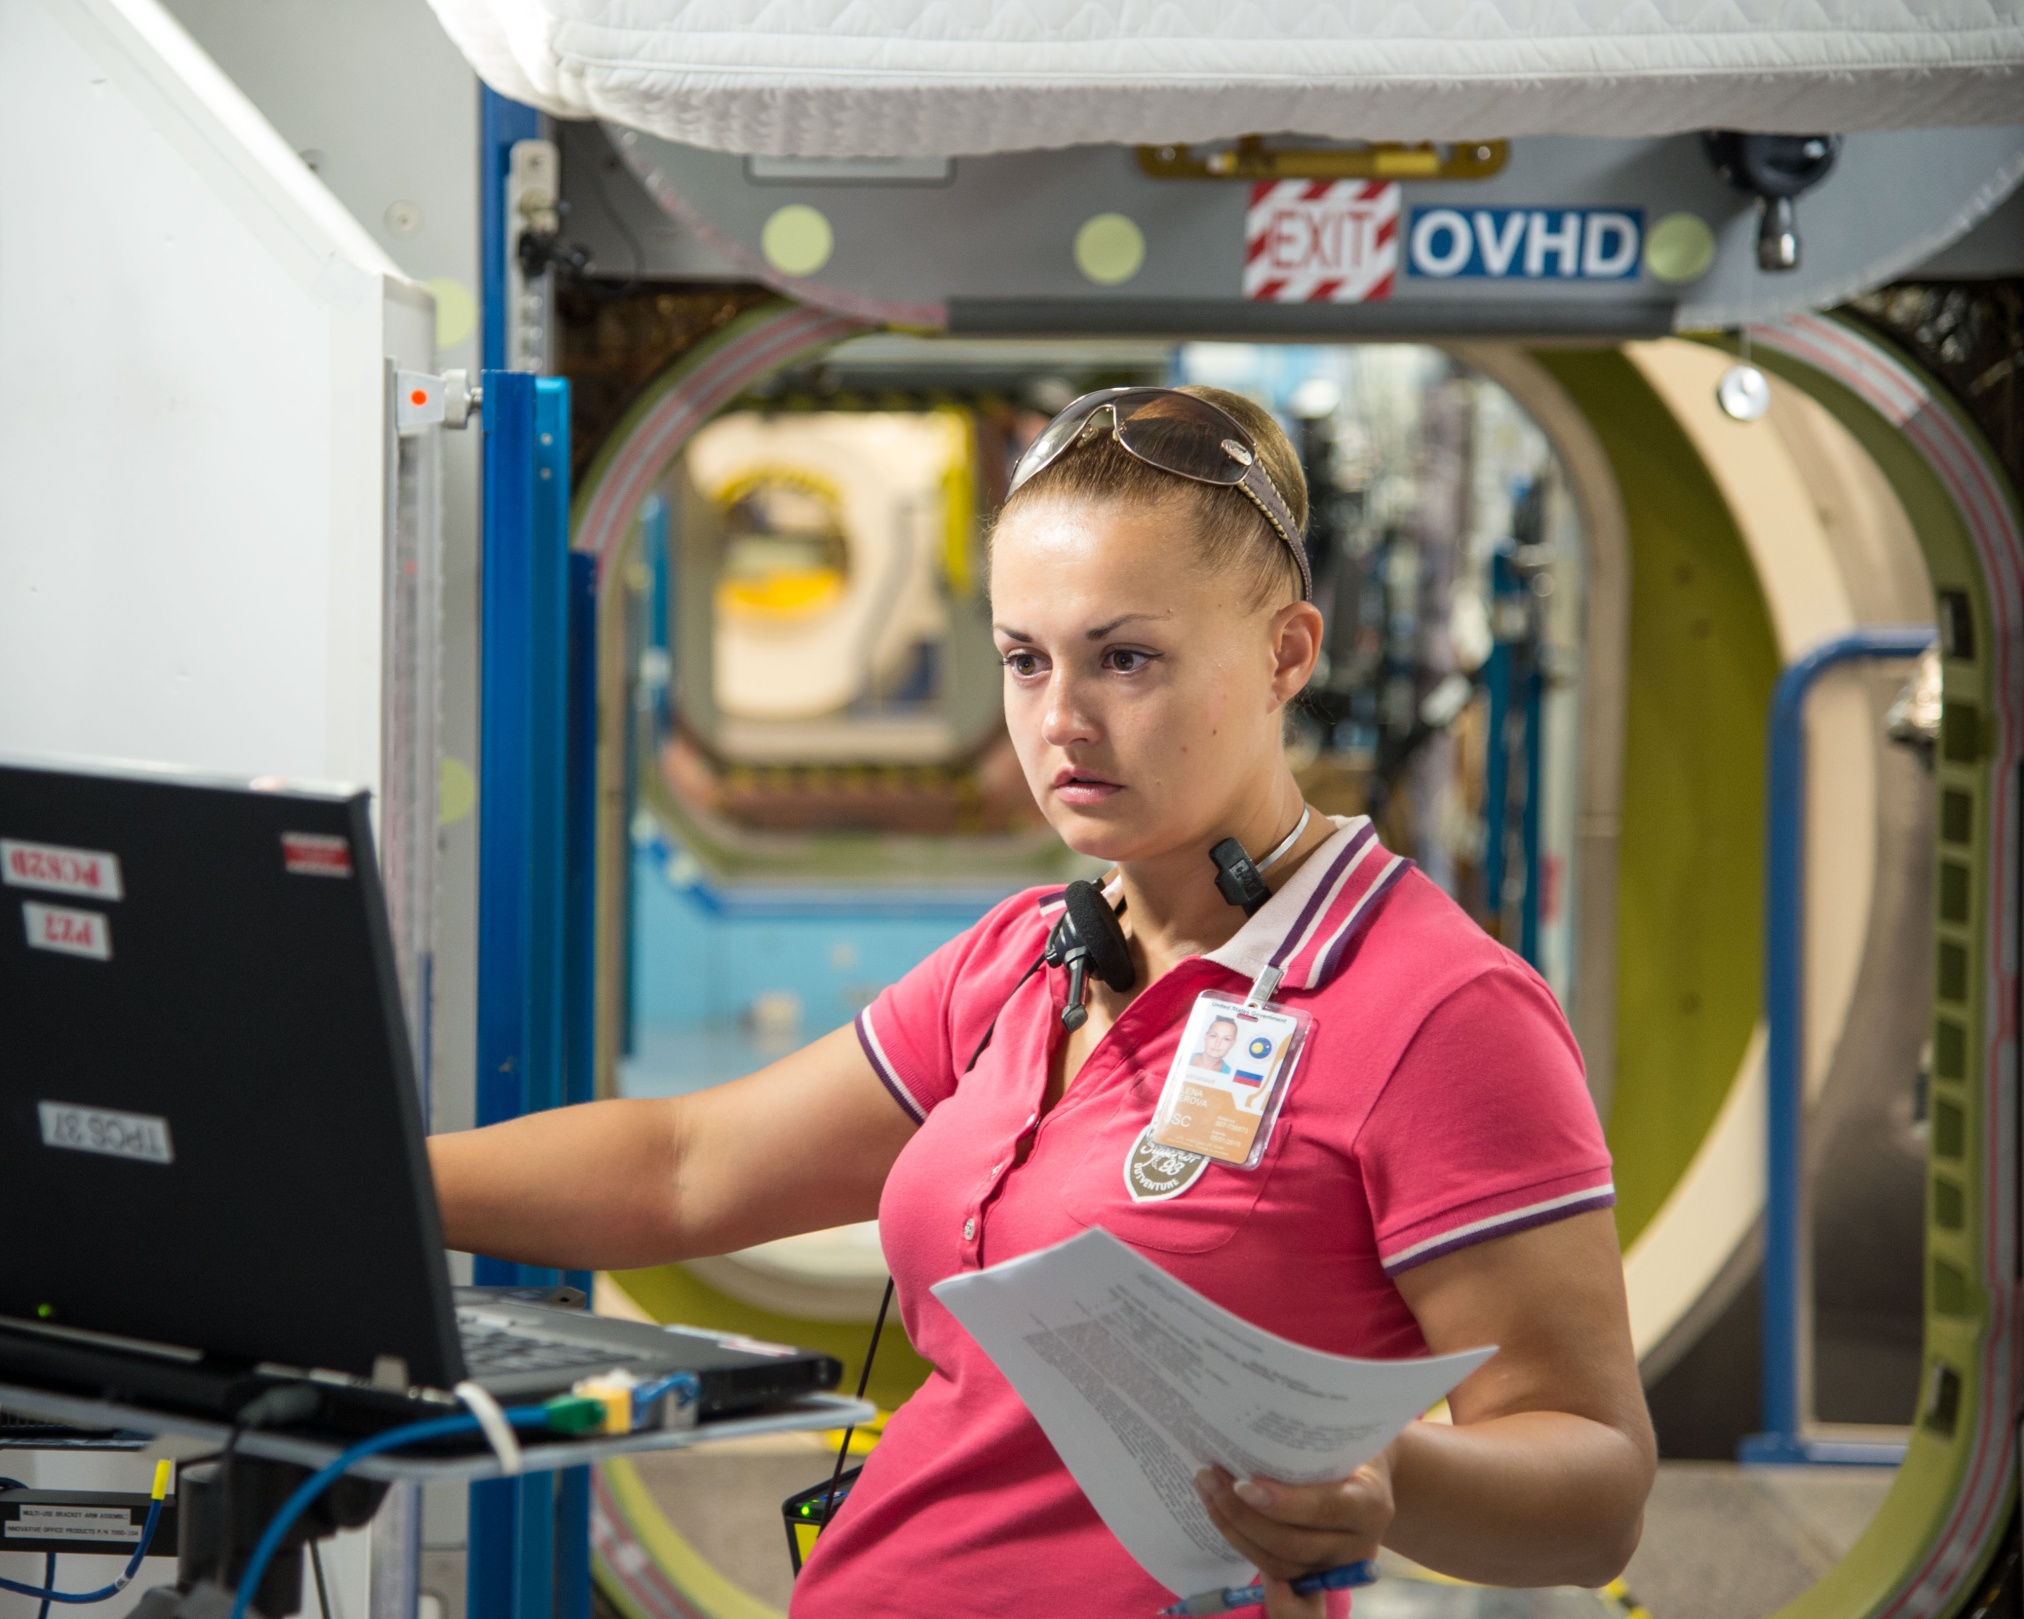 Подготовка к полету включает и изучение американского сегмента МКС. Елена Серова на тренировках в Центре Джонсона NASA. Сентябрь 2013 года